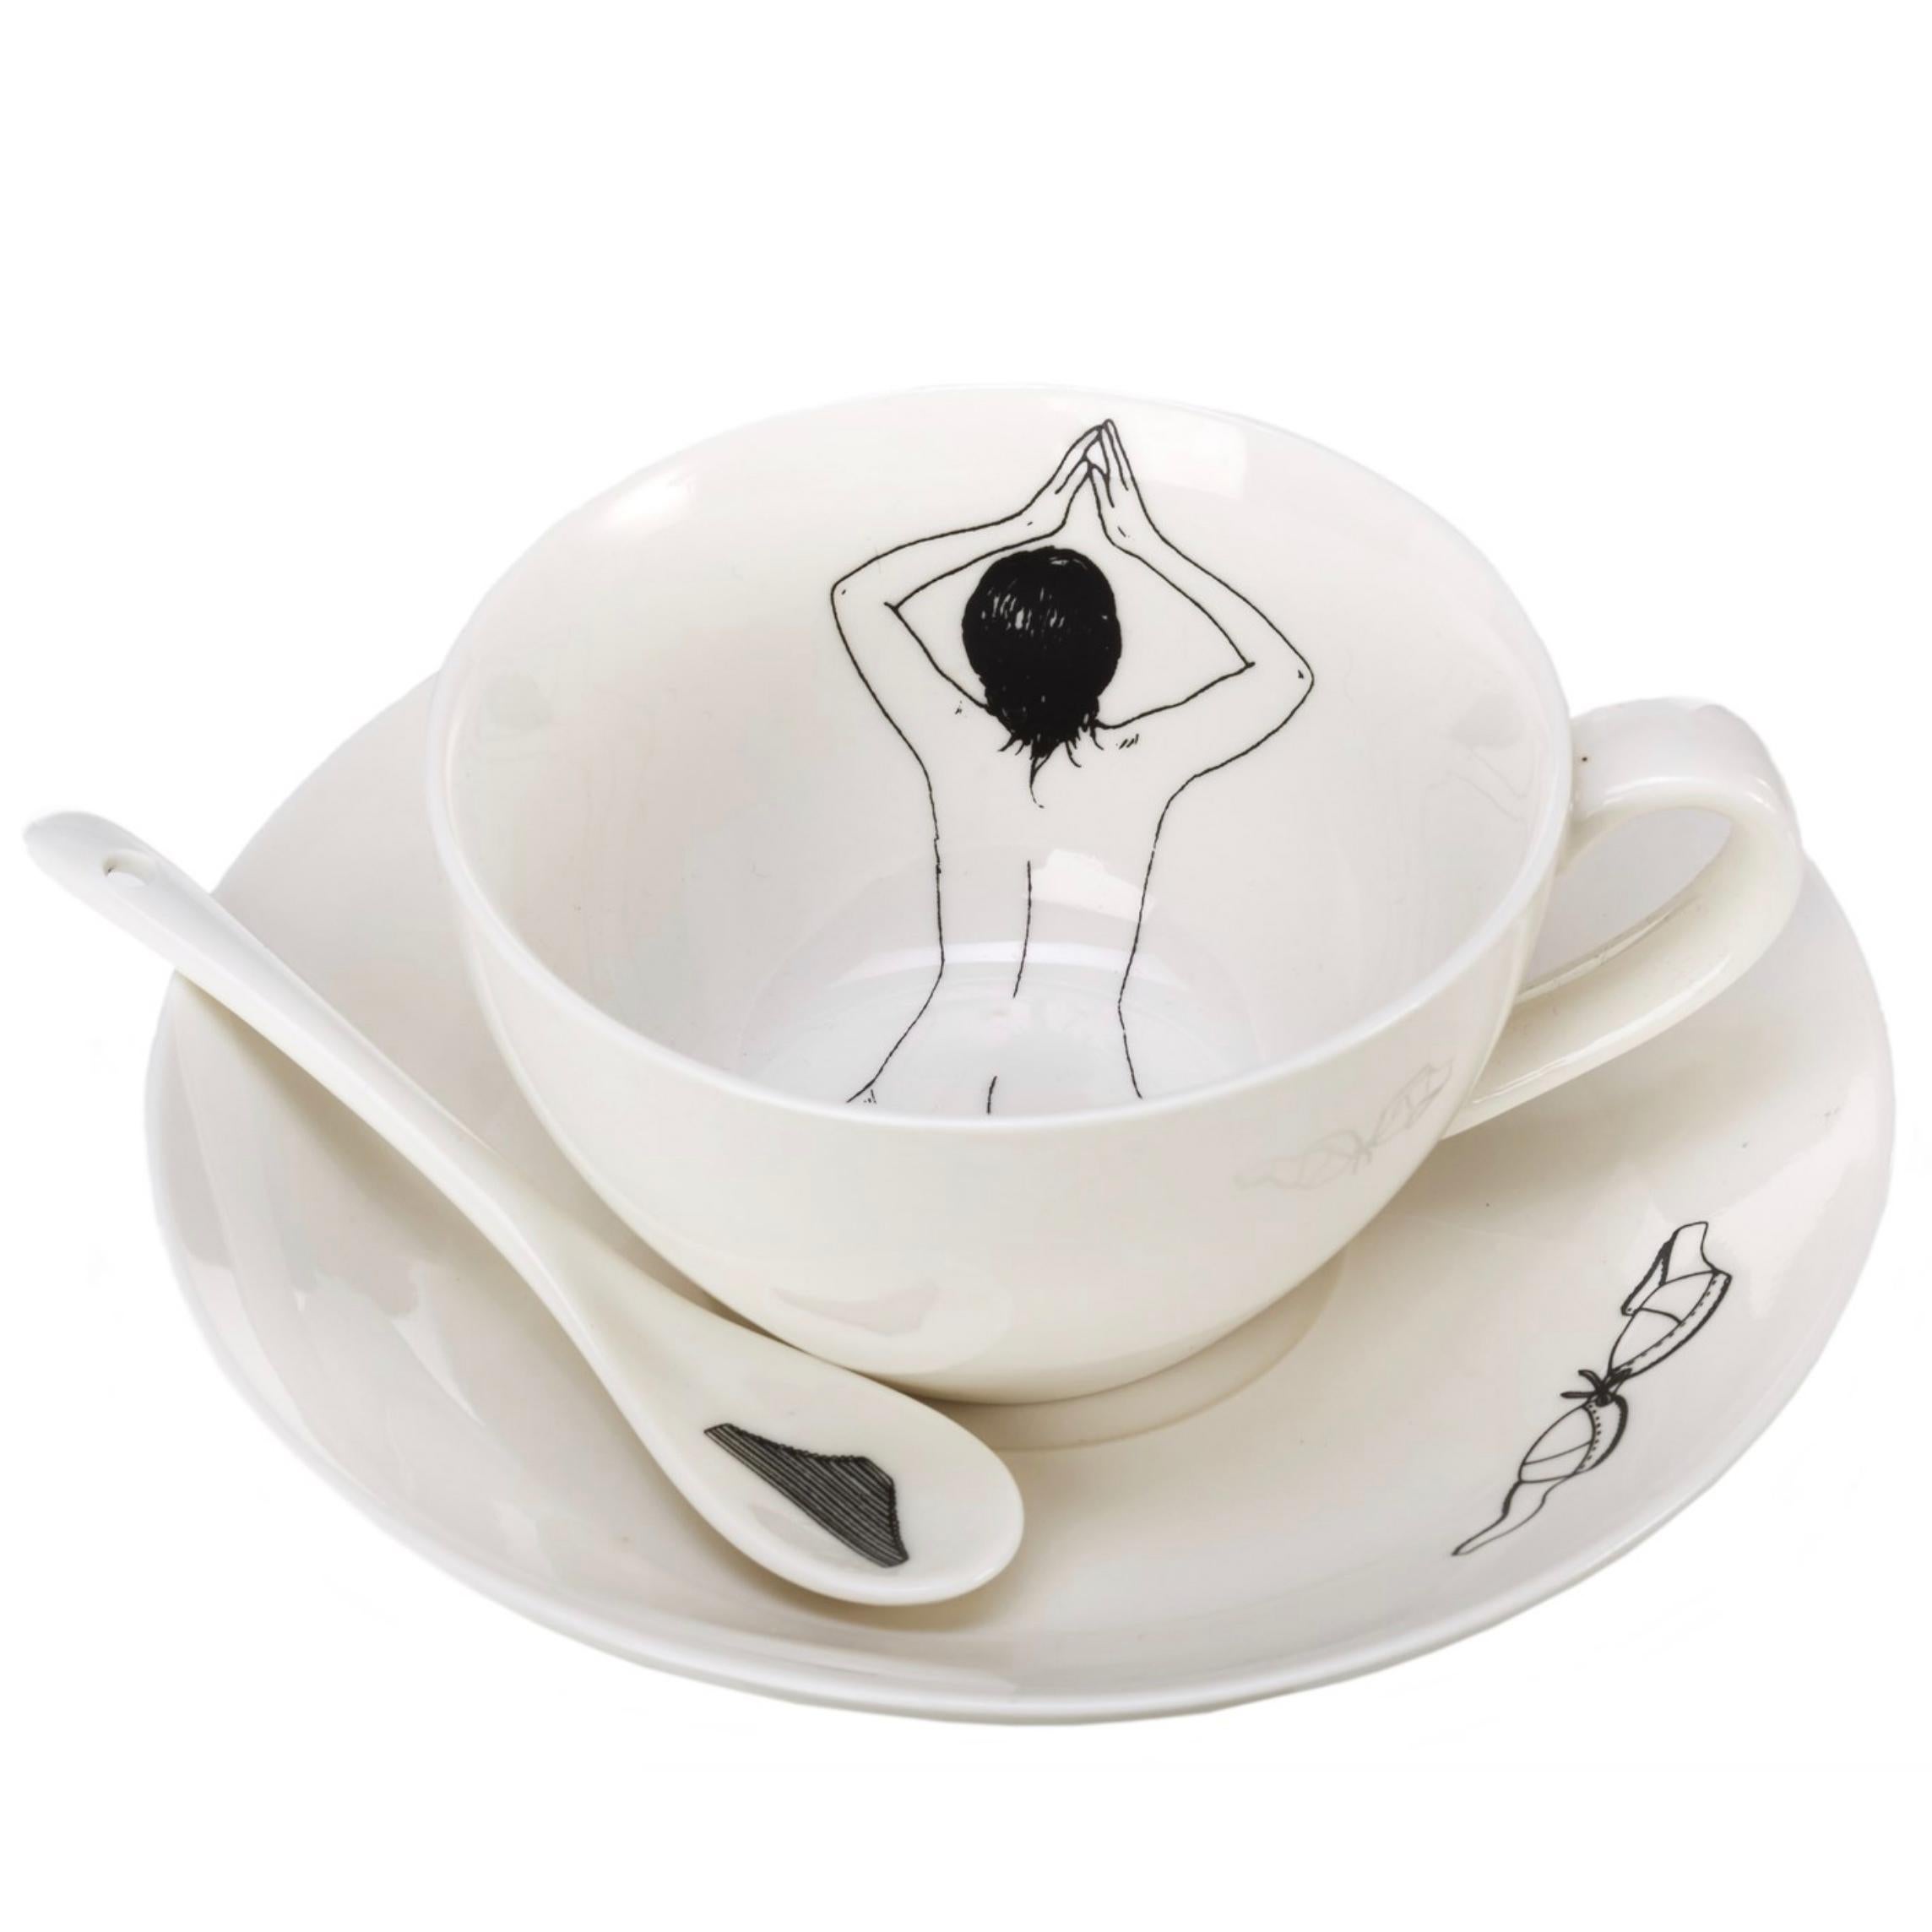 Das unbekleidete Teeservice wurde von Esther Hörchner in den Niederlanden entworfen und handgefertigt. Auf jeder Tasse ist eine nackte Frau in verschiedenen Positionen abgebildet, als würde sie im Tee oder Kaffee baden. Das Set ist komplett mit vier